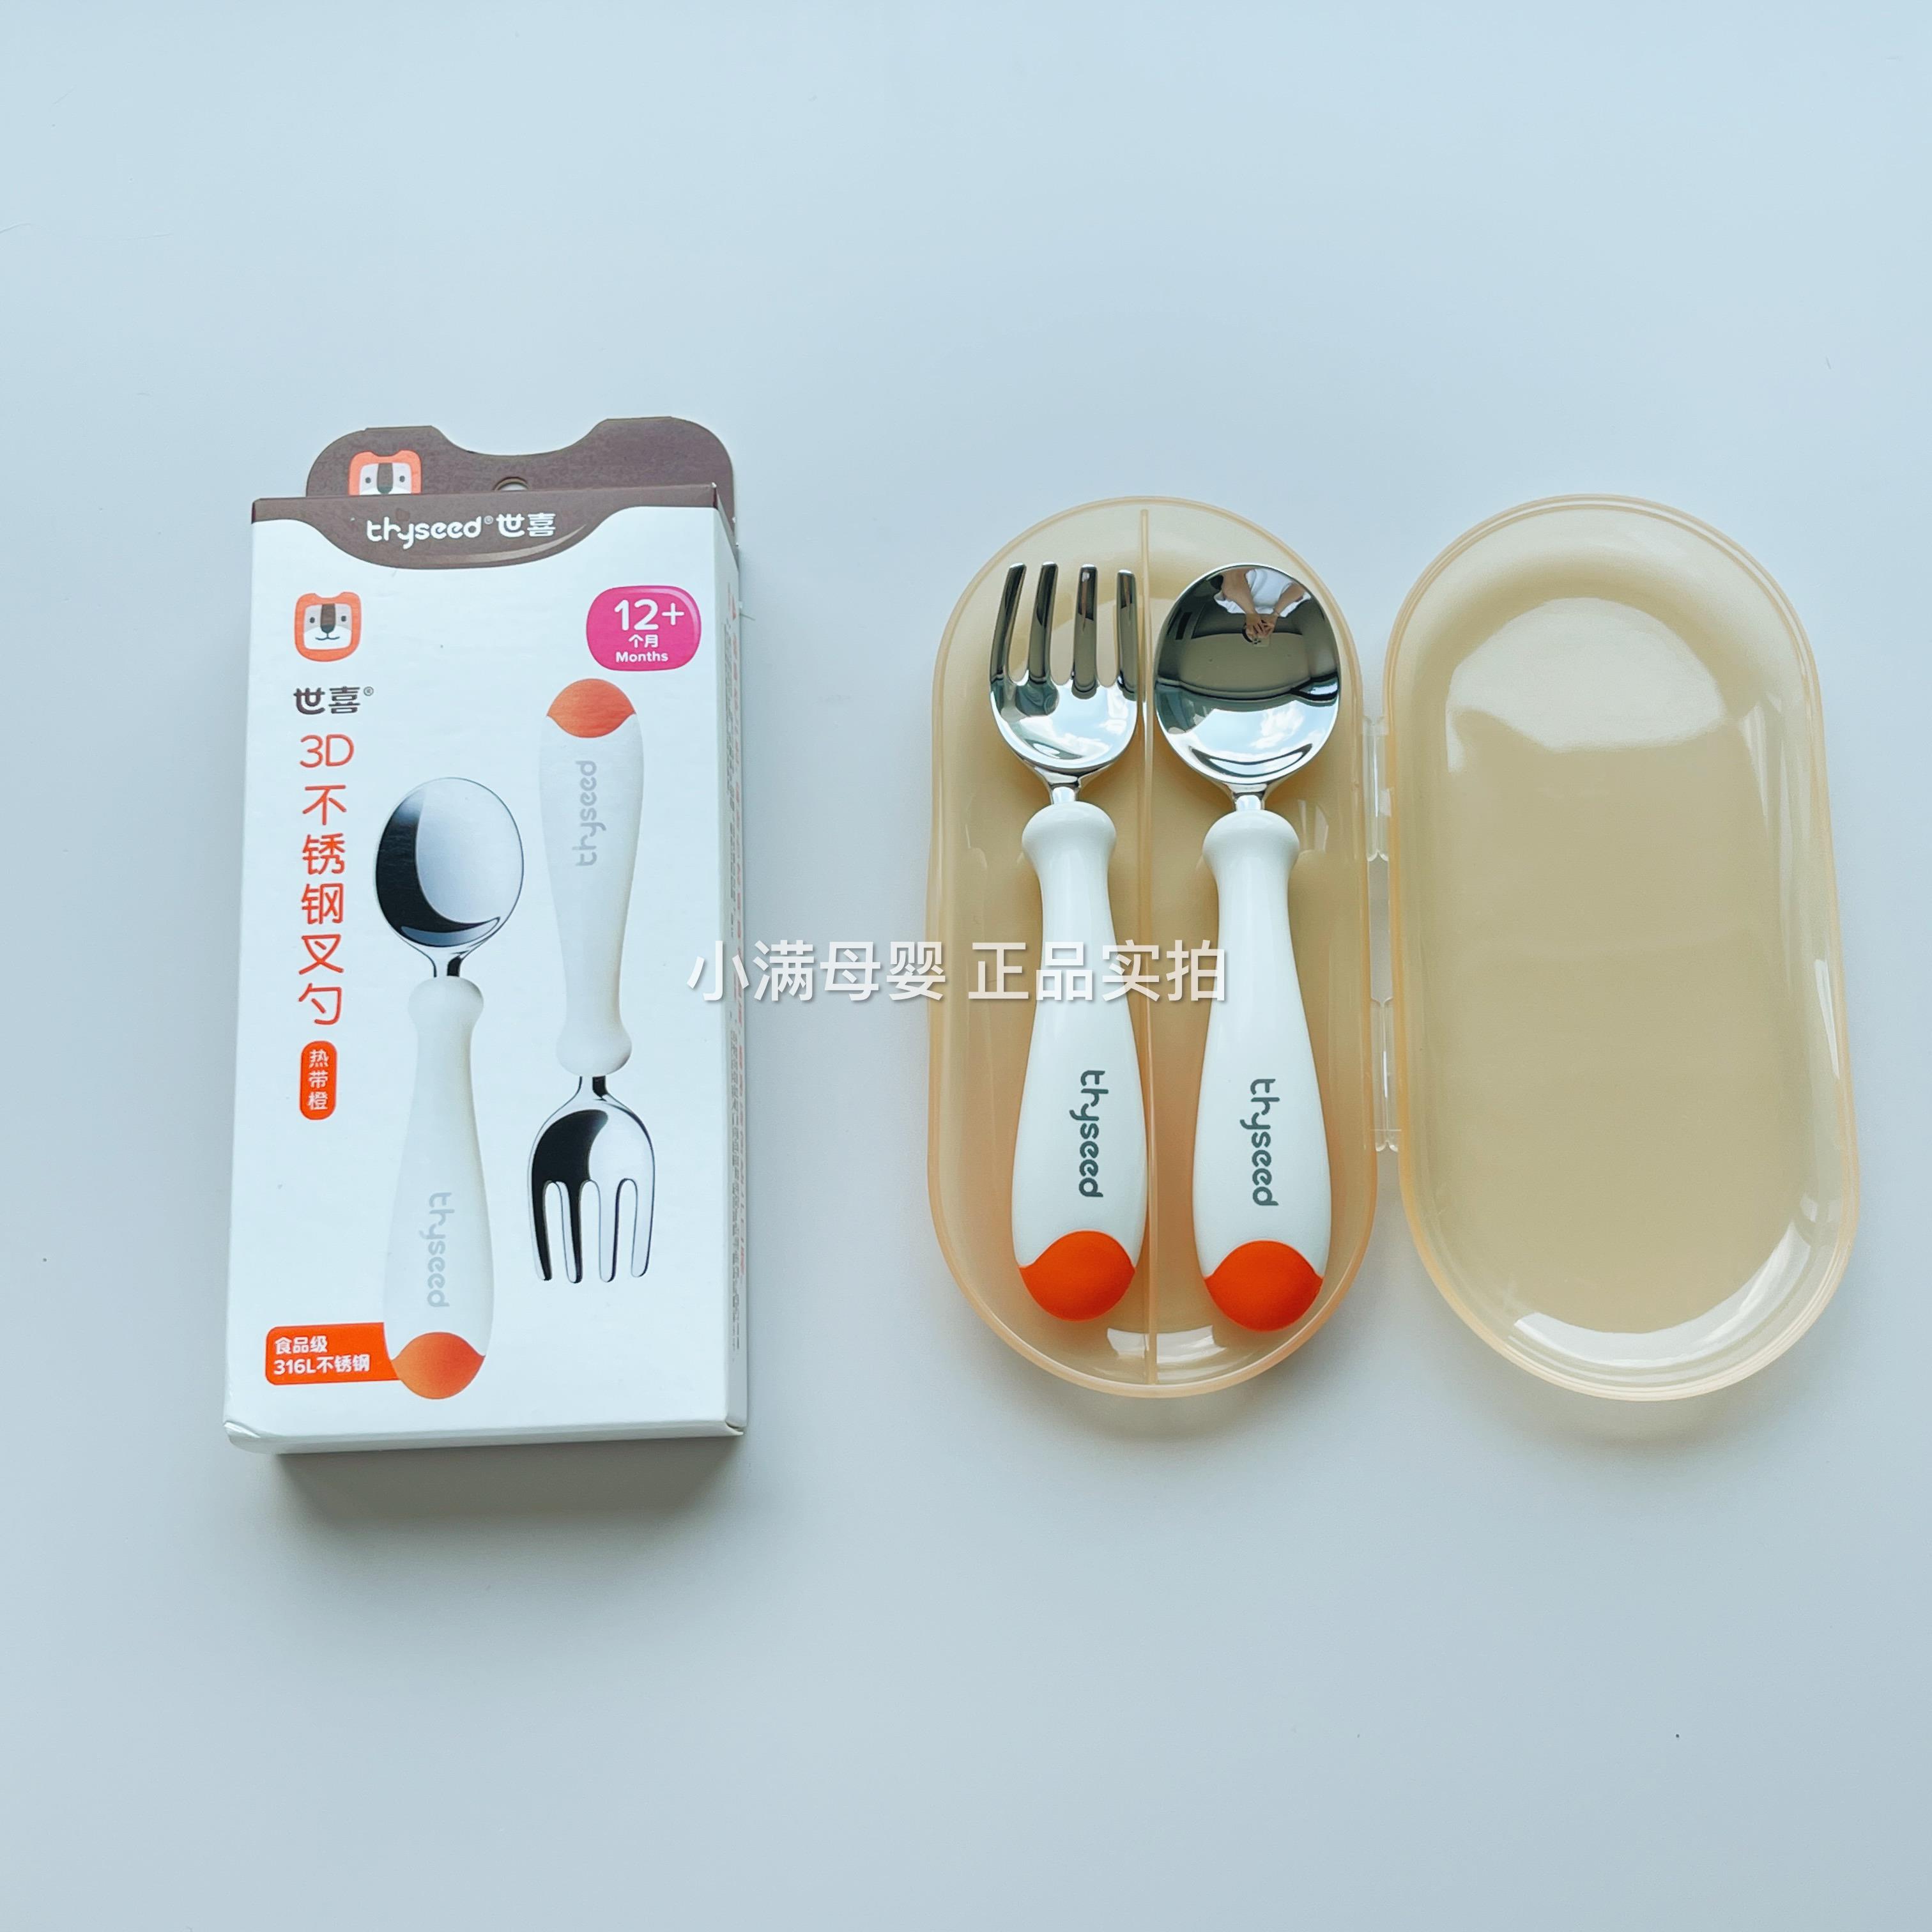 世喜叉勺宝宝勺子儿童学吃饭训练婴儿叉子餐具自主进食饭勺不锈钢